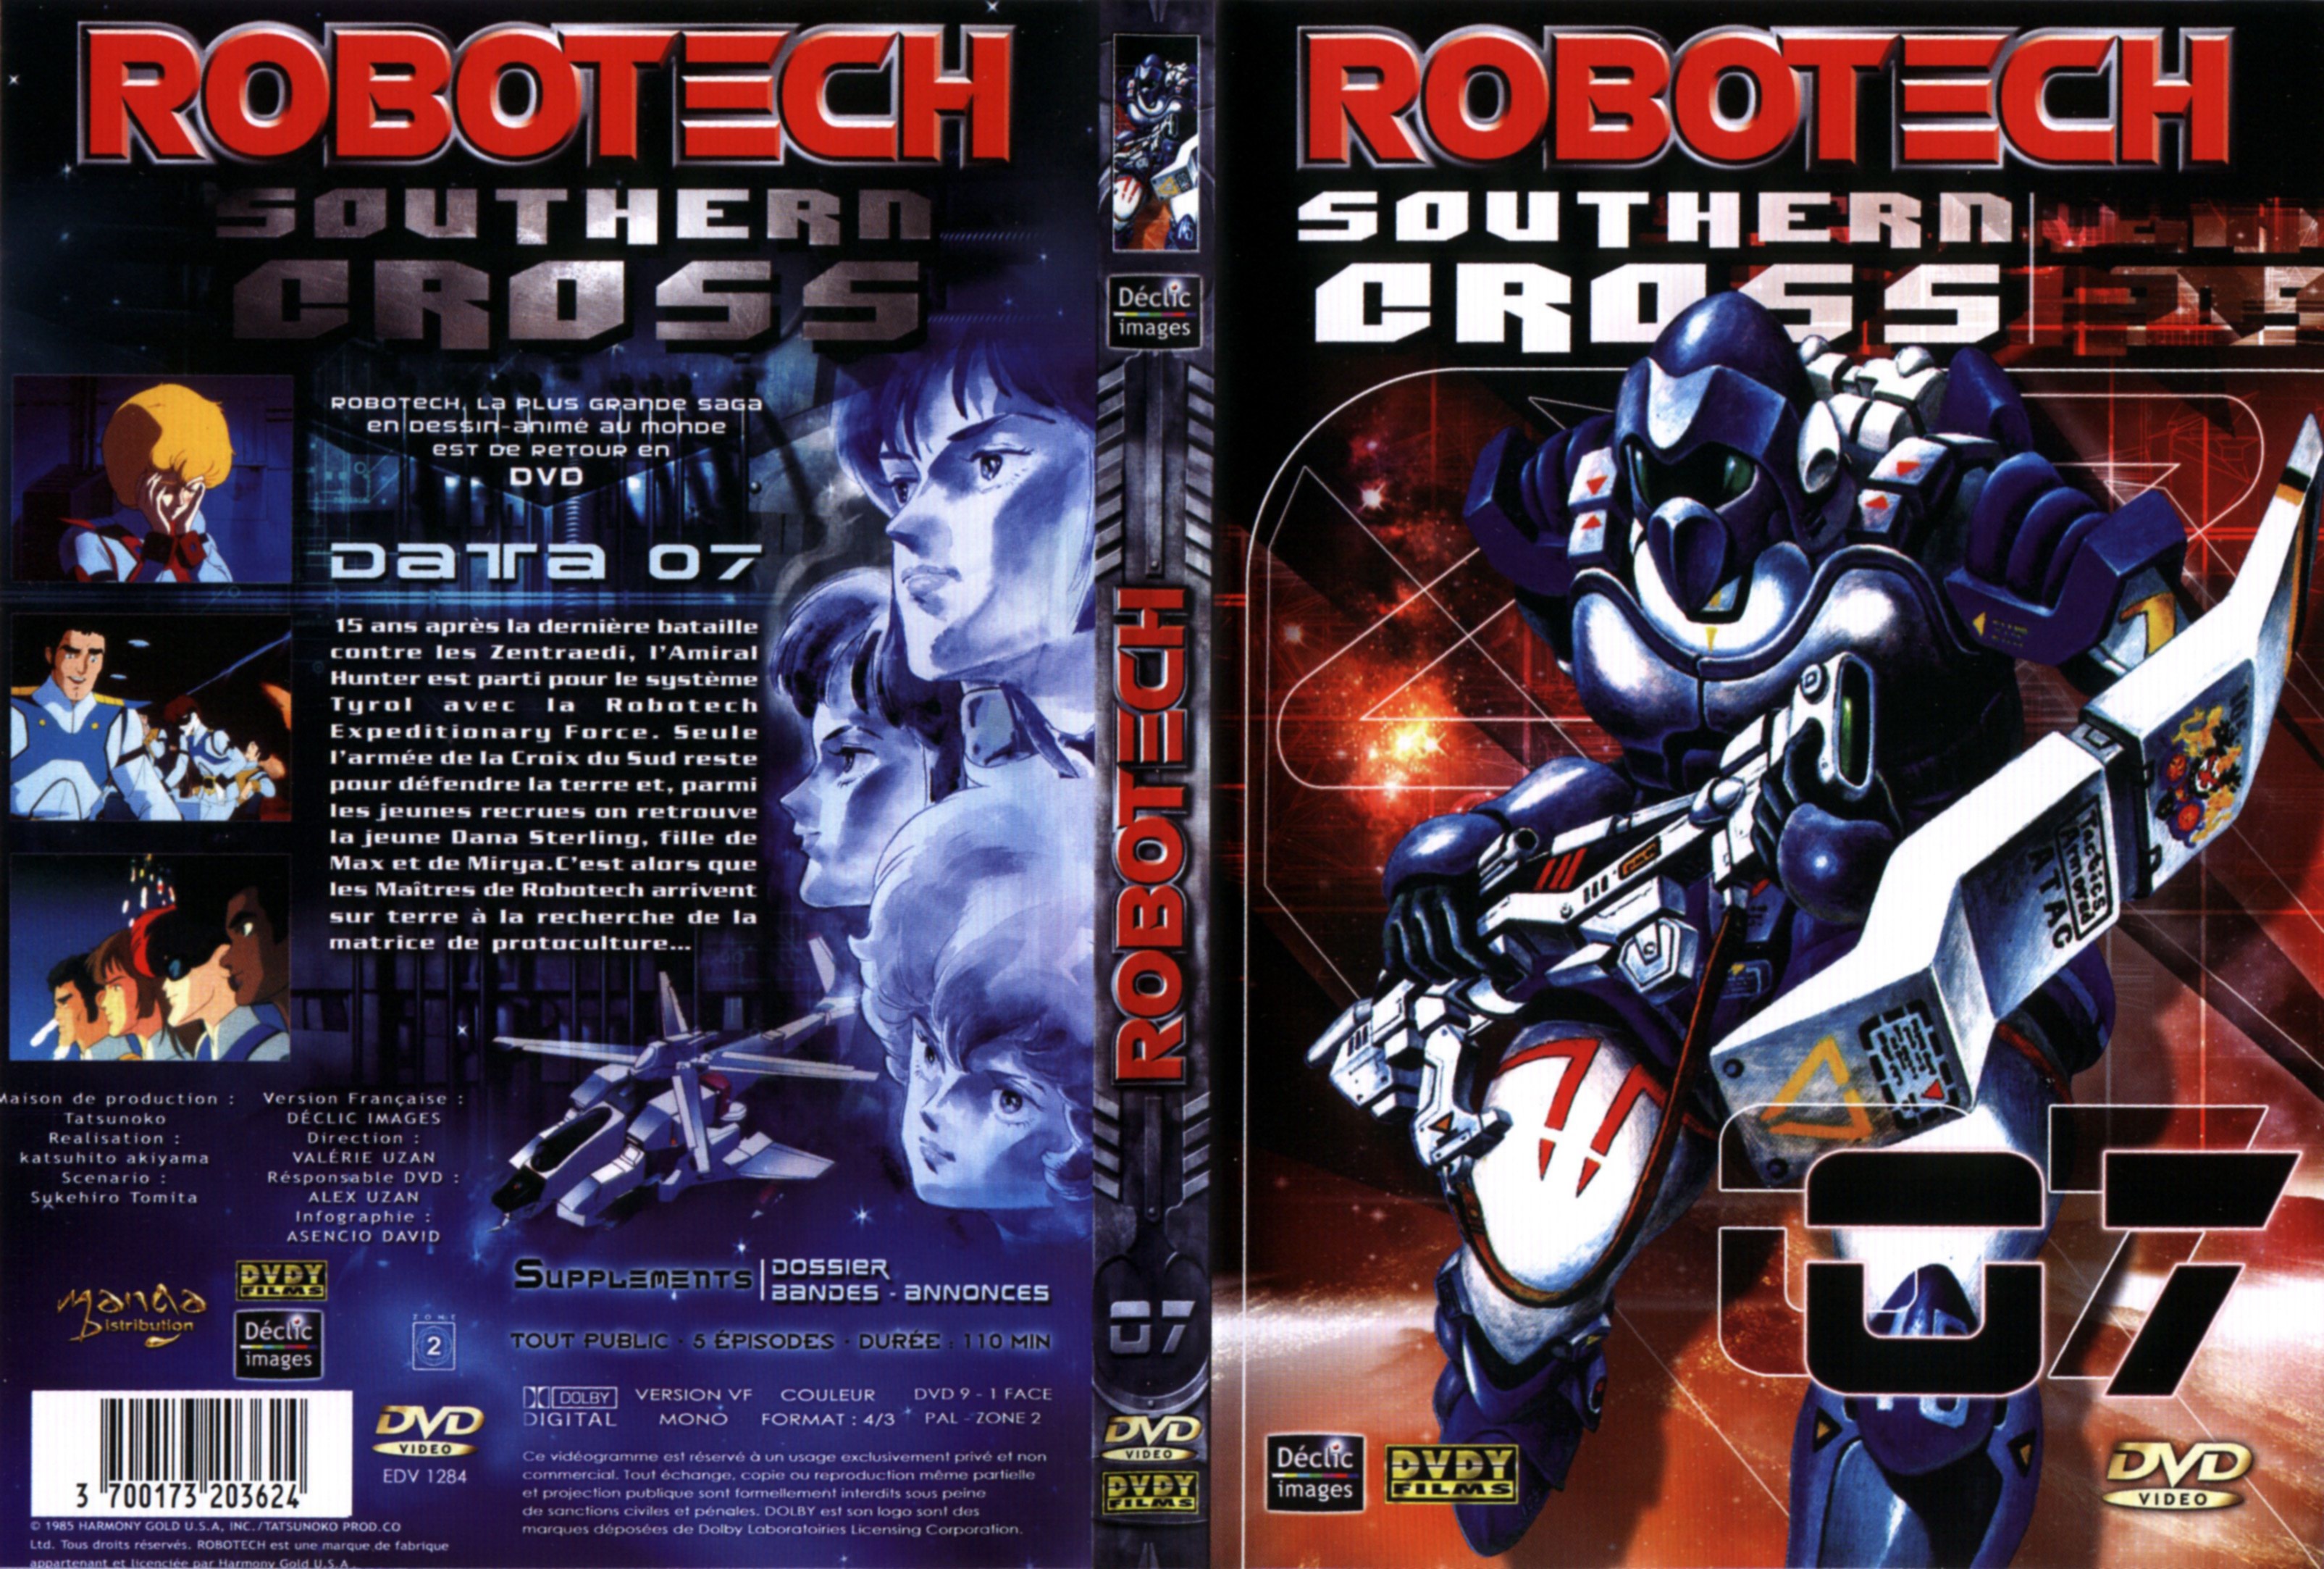 Jaquette DVD Robotech Southern cross vol 07